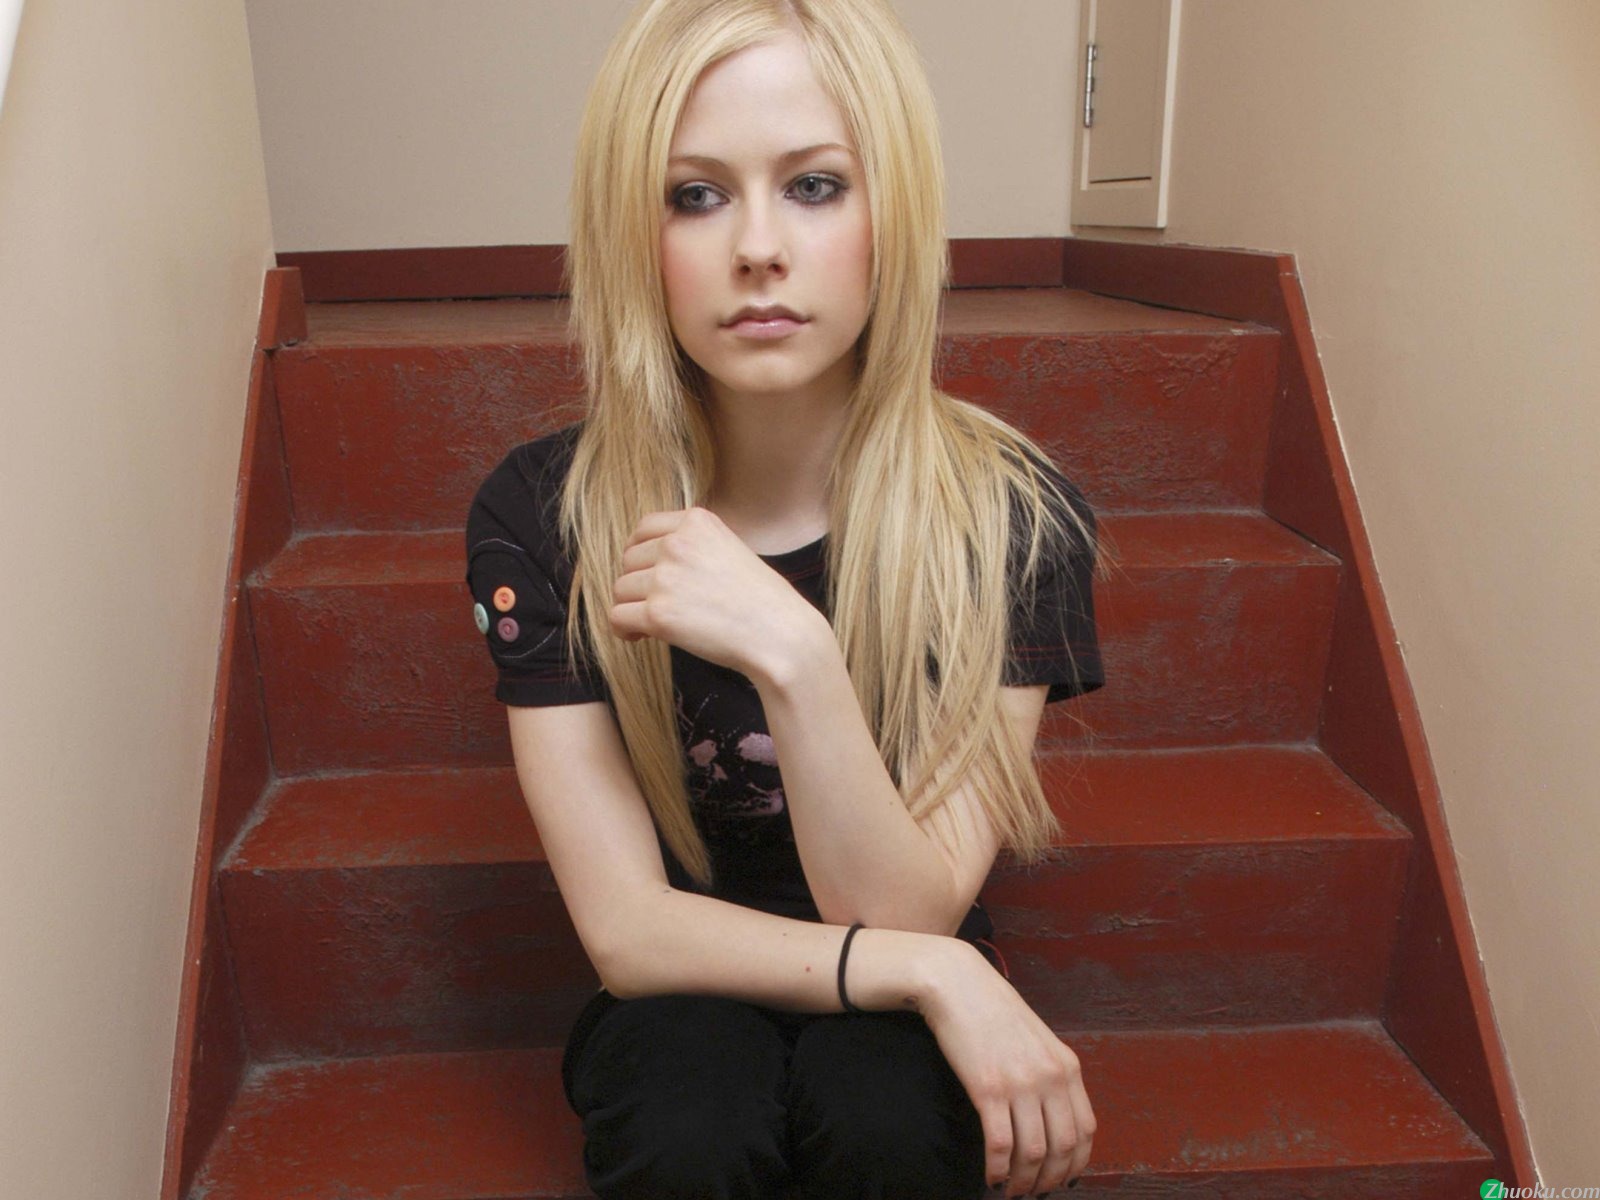 壁纸1600x1200艾薇儿 Avril Lavigne 壁纸75壁纸 艾薇儿 Avril Lavigne壁纸 艾薇儿 Avril Lavigne图片 艾薇儿 Avril Lavigne素材 明星壁纸 明星图库 明星图片素材桌面壁纸